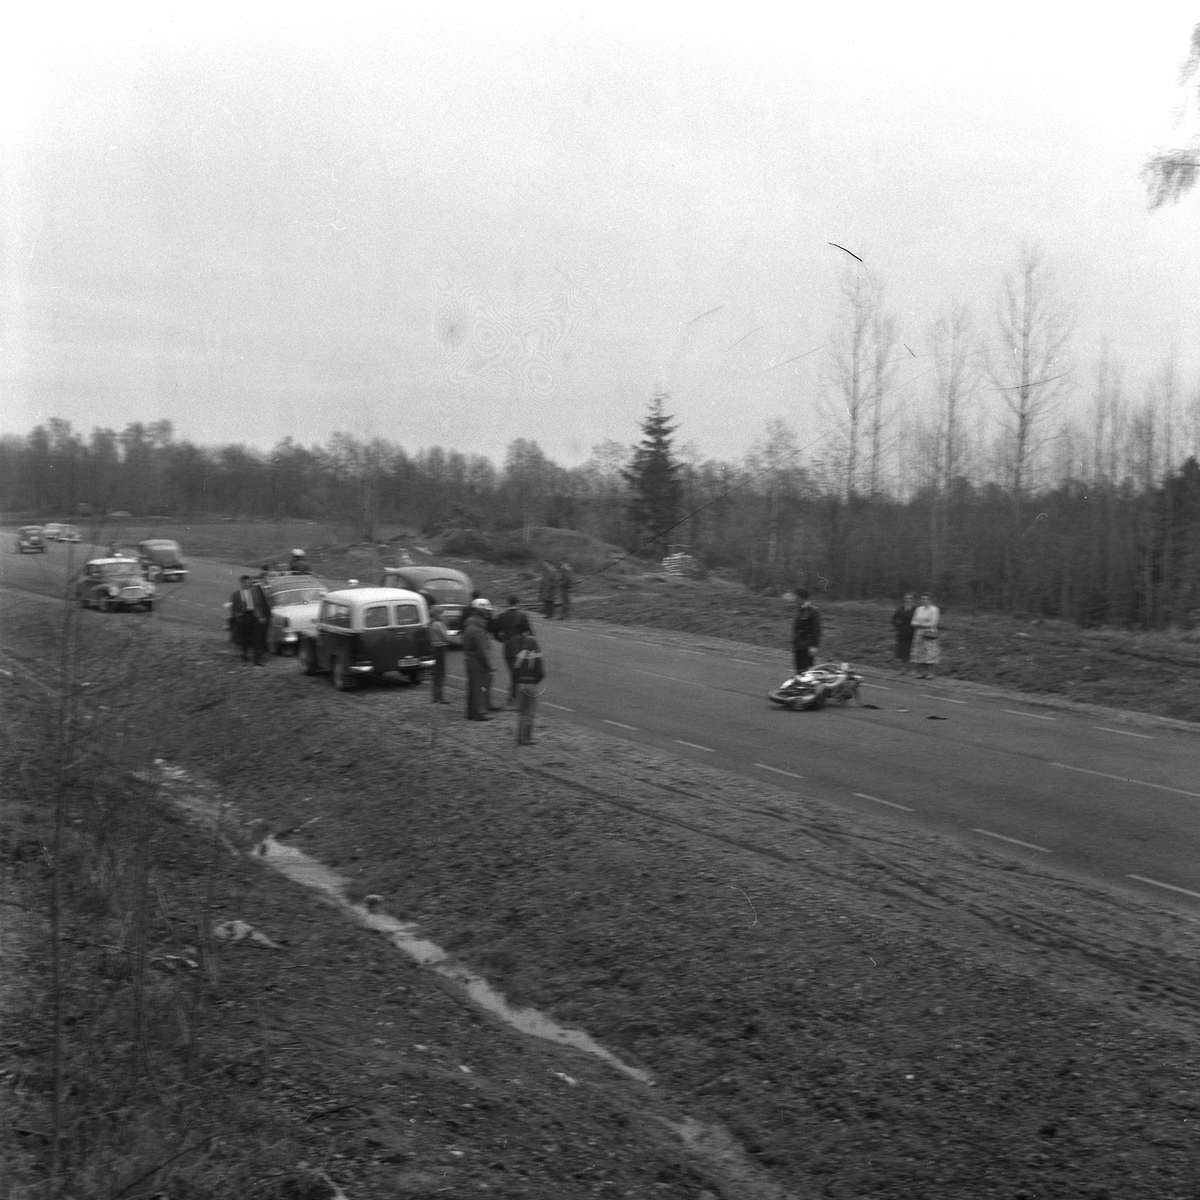 Olycka i Myrö. 
4 maj 1959.